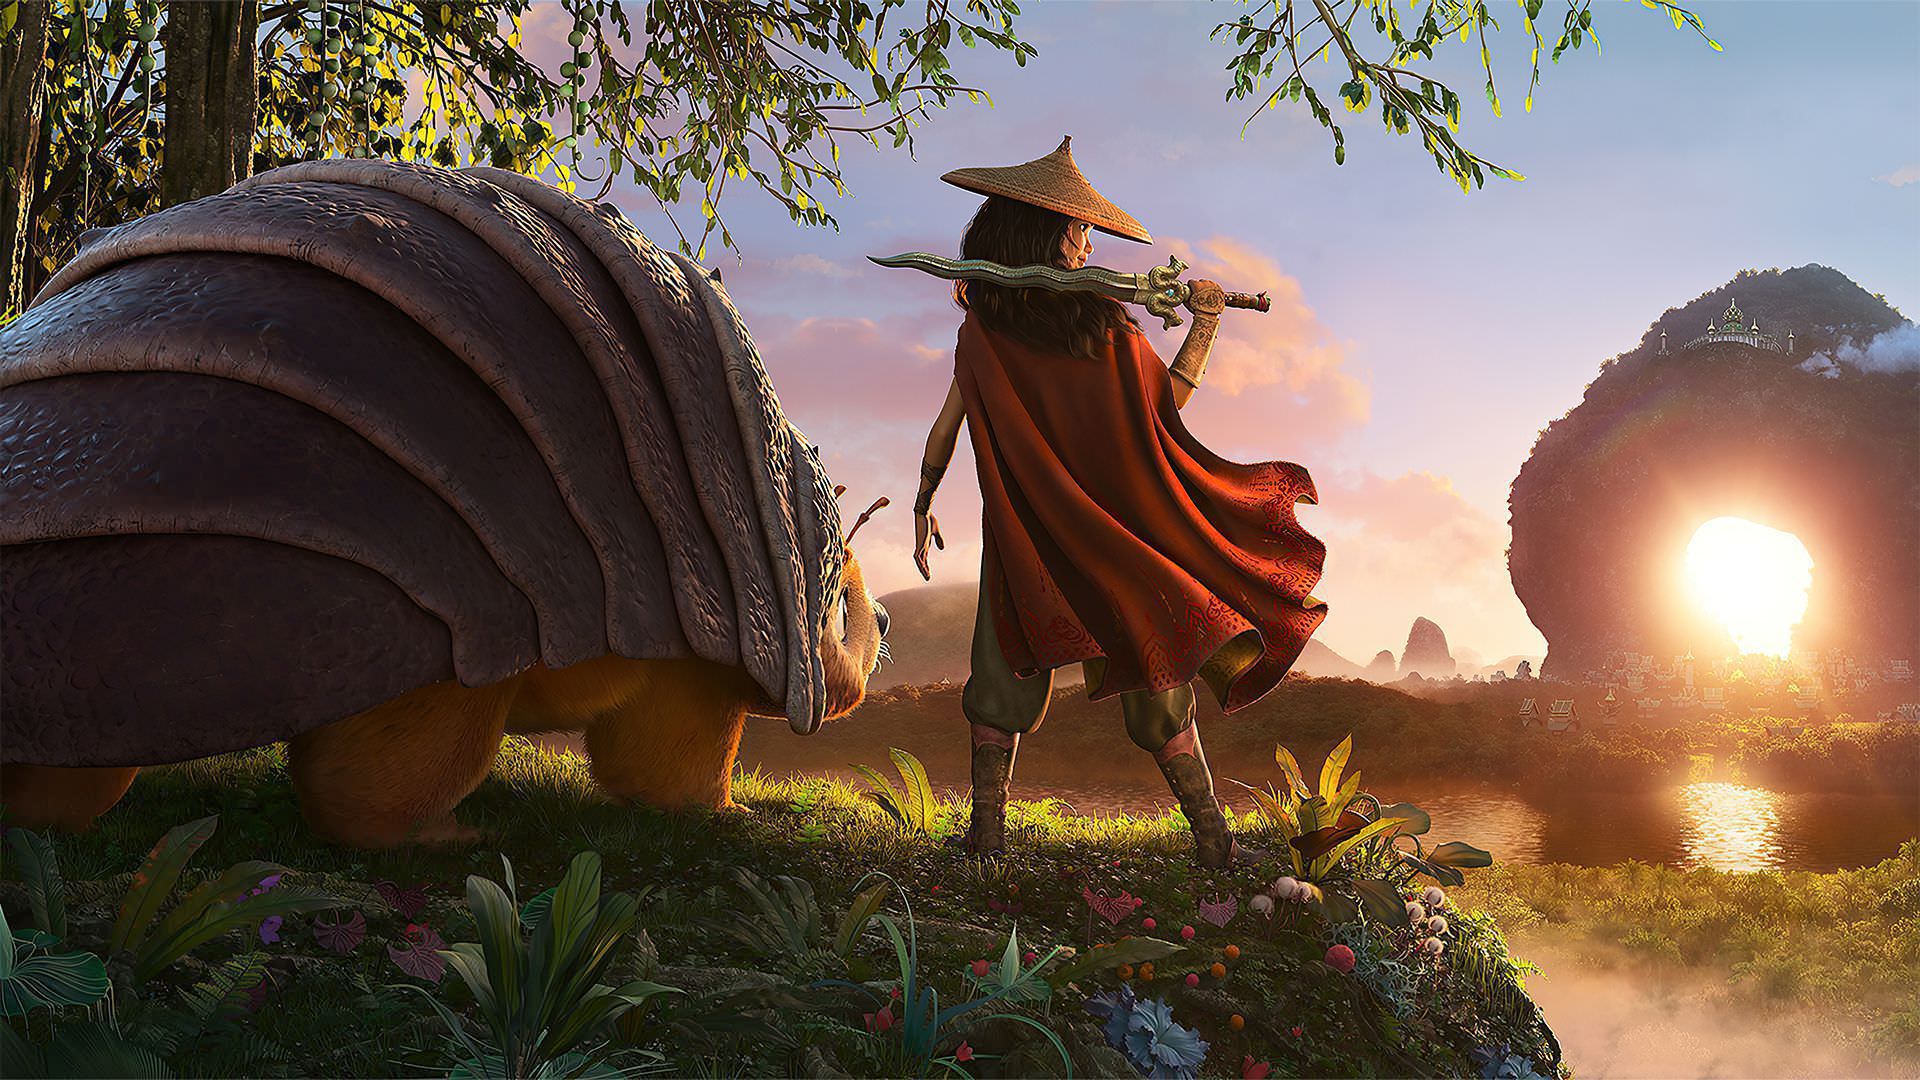 انیمیشن Raya and the Last Dragon همزمان با اکران در سینماها از دیزنی پلاس منتشر خواهد شد